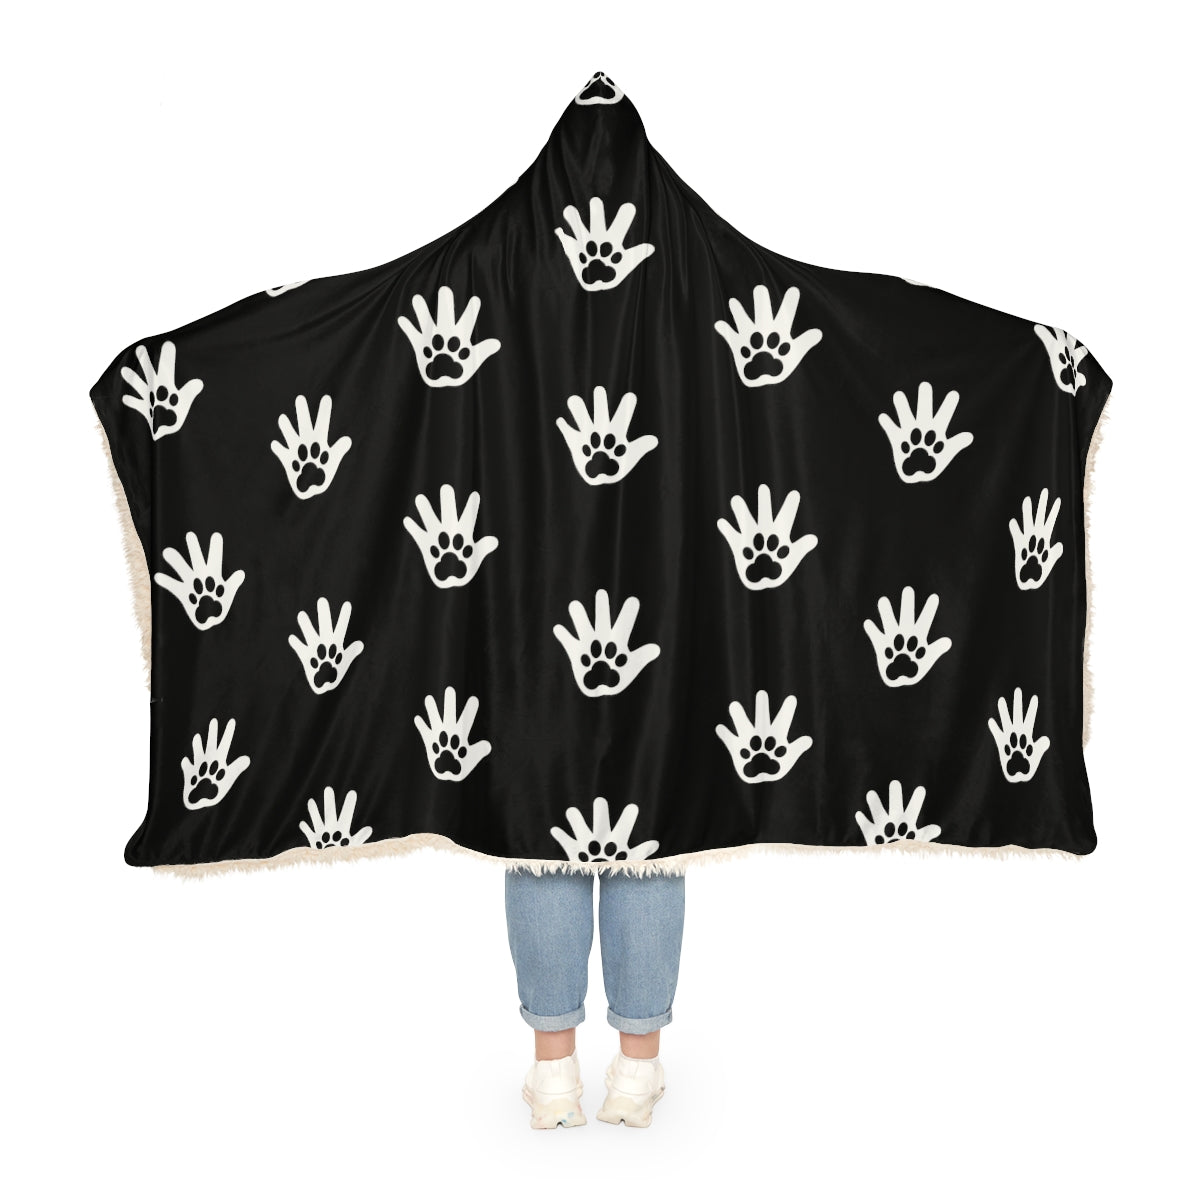 Paw n' Hand Snuggle Blanket - Black